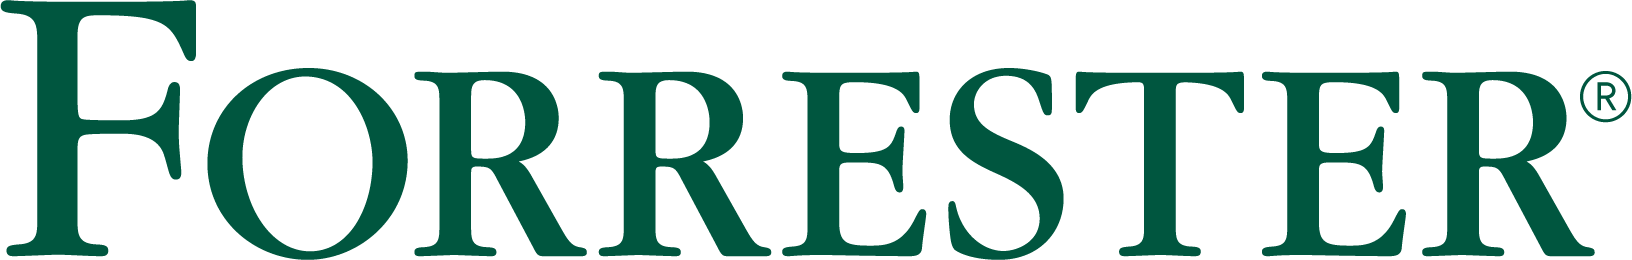 Forrester rgb logo 1